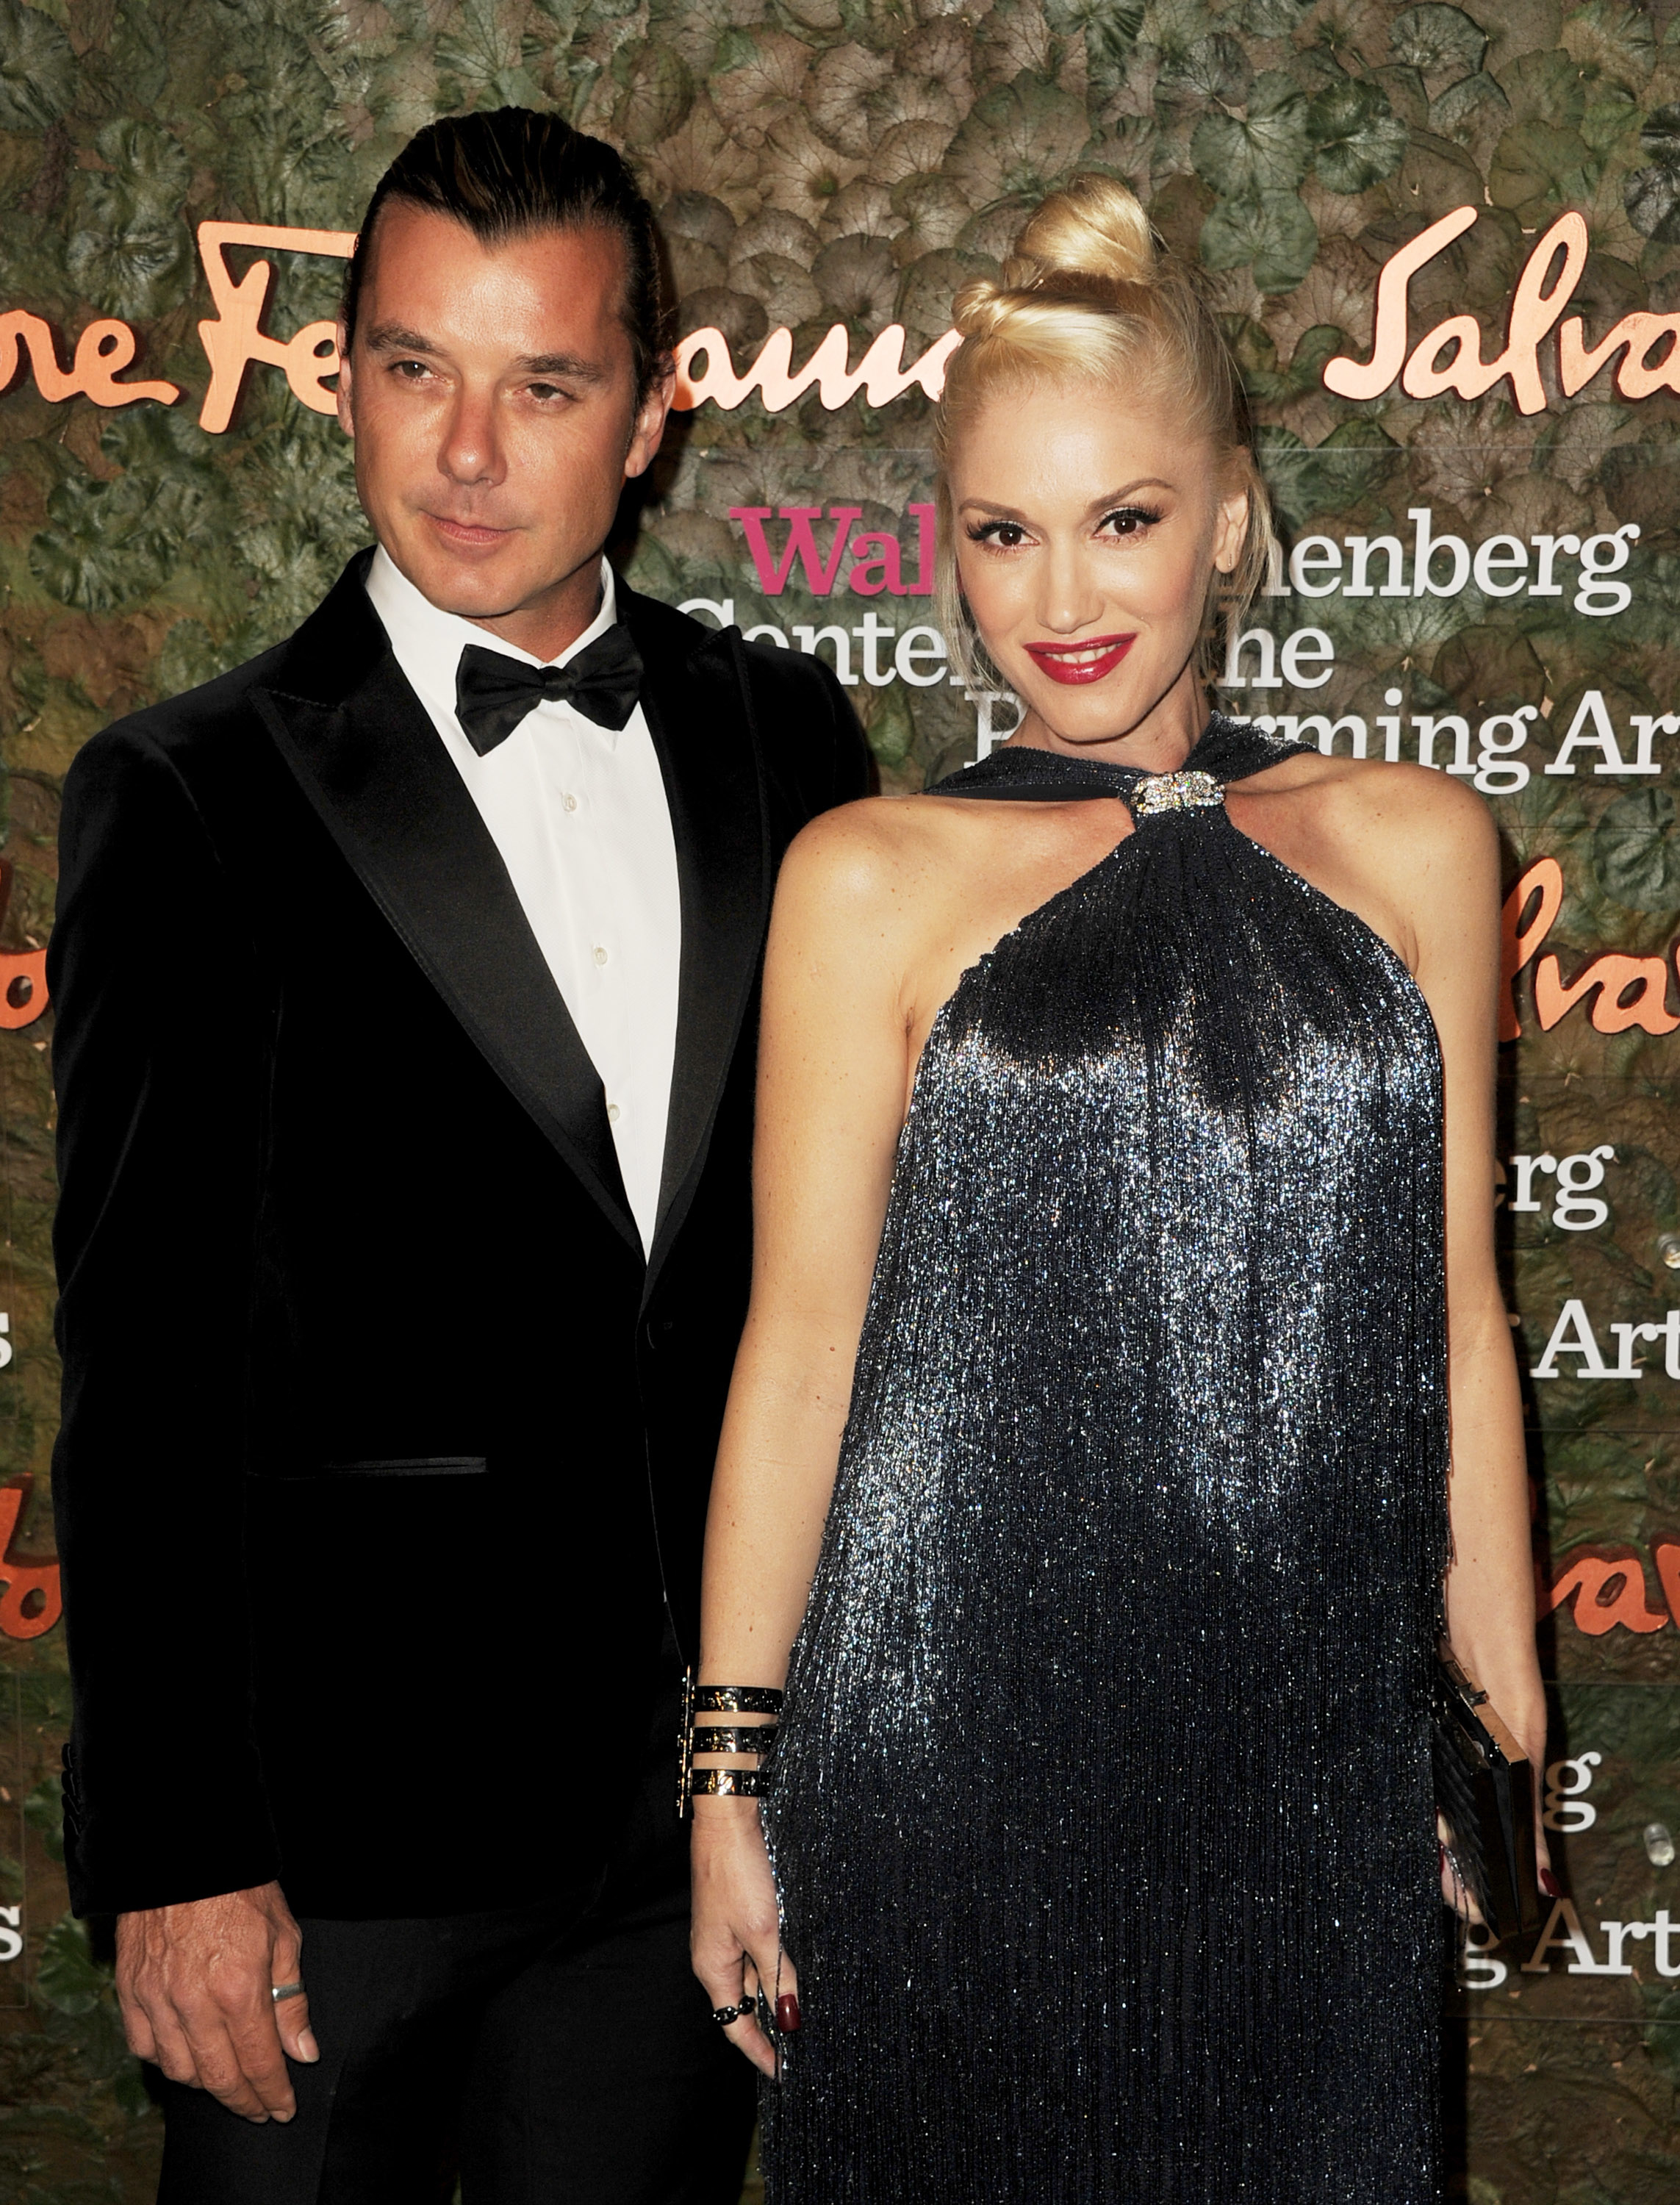 Gavin in a black tuxedo and Gwen in a glittering halter-neck dress